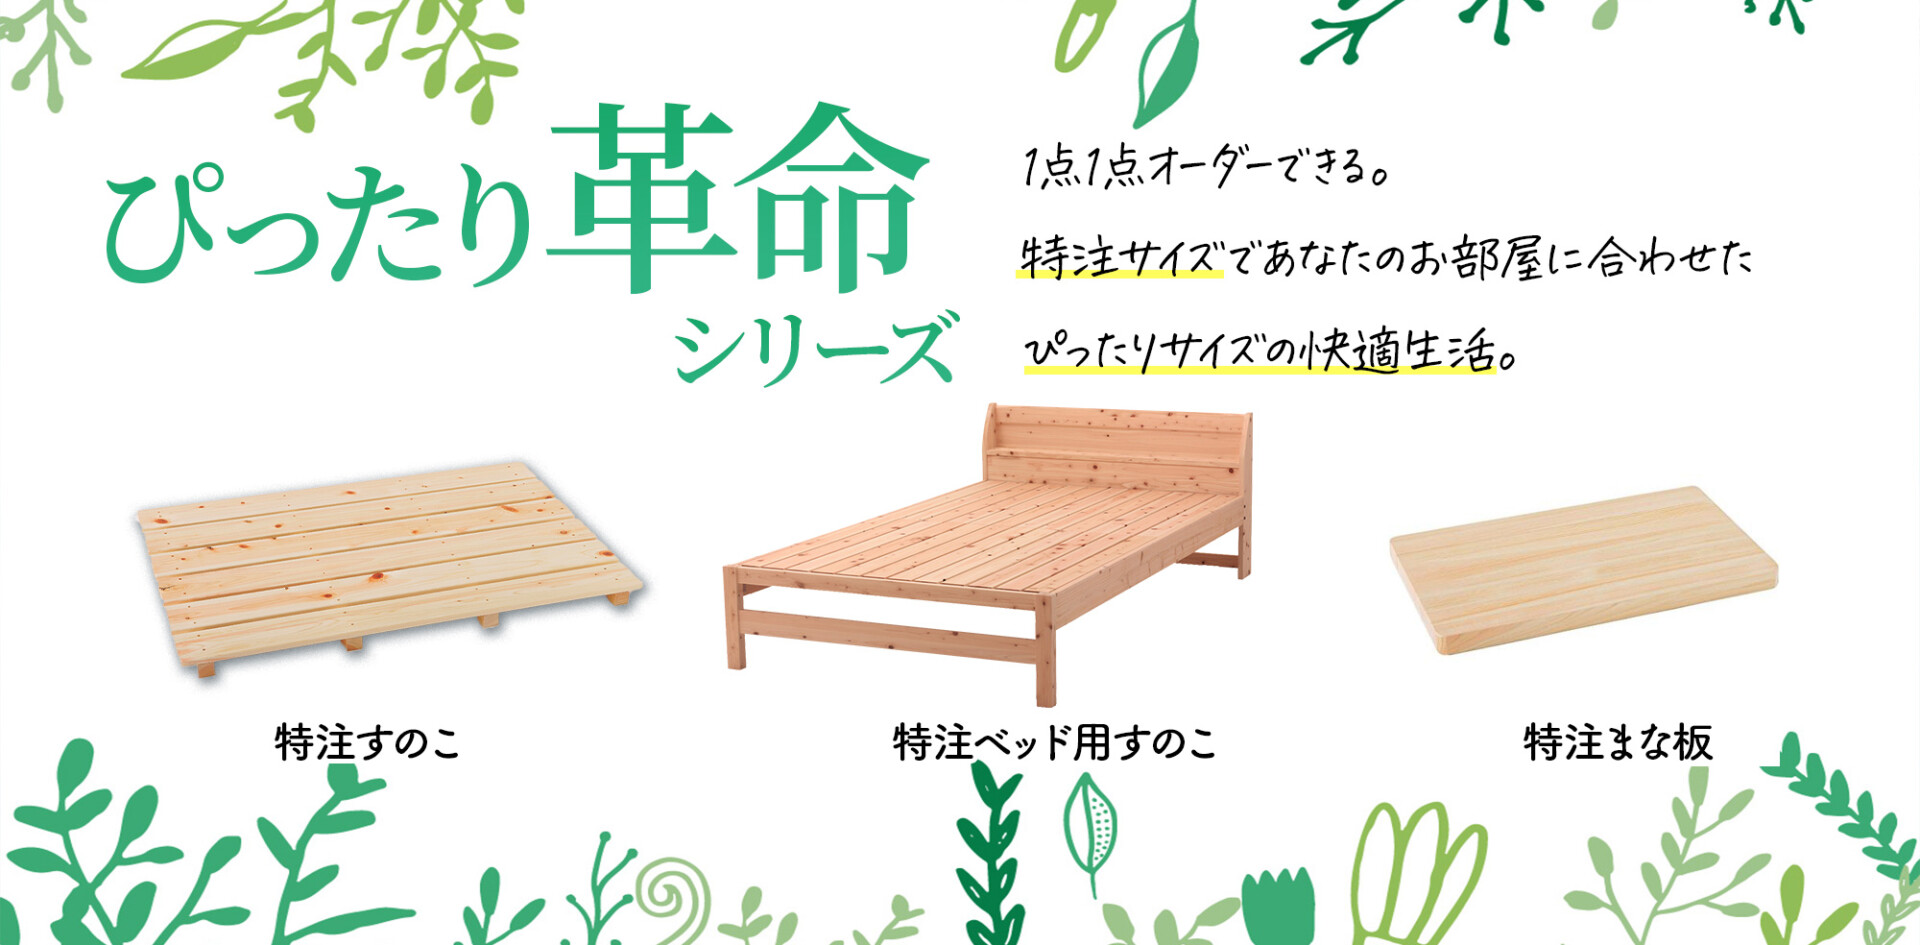 生産数日本一の「すのこ」特注木材製品の製造、販売ならすのこ王国